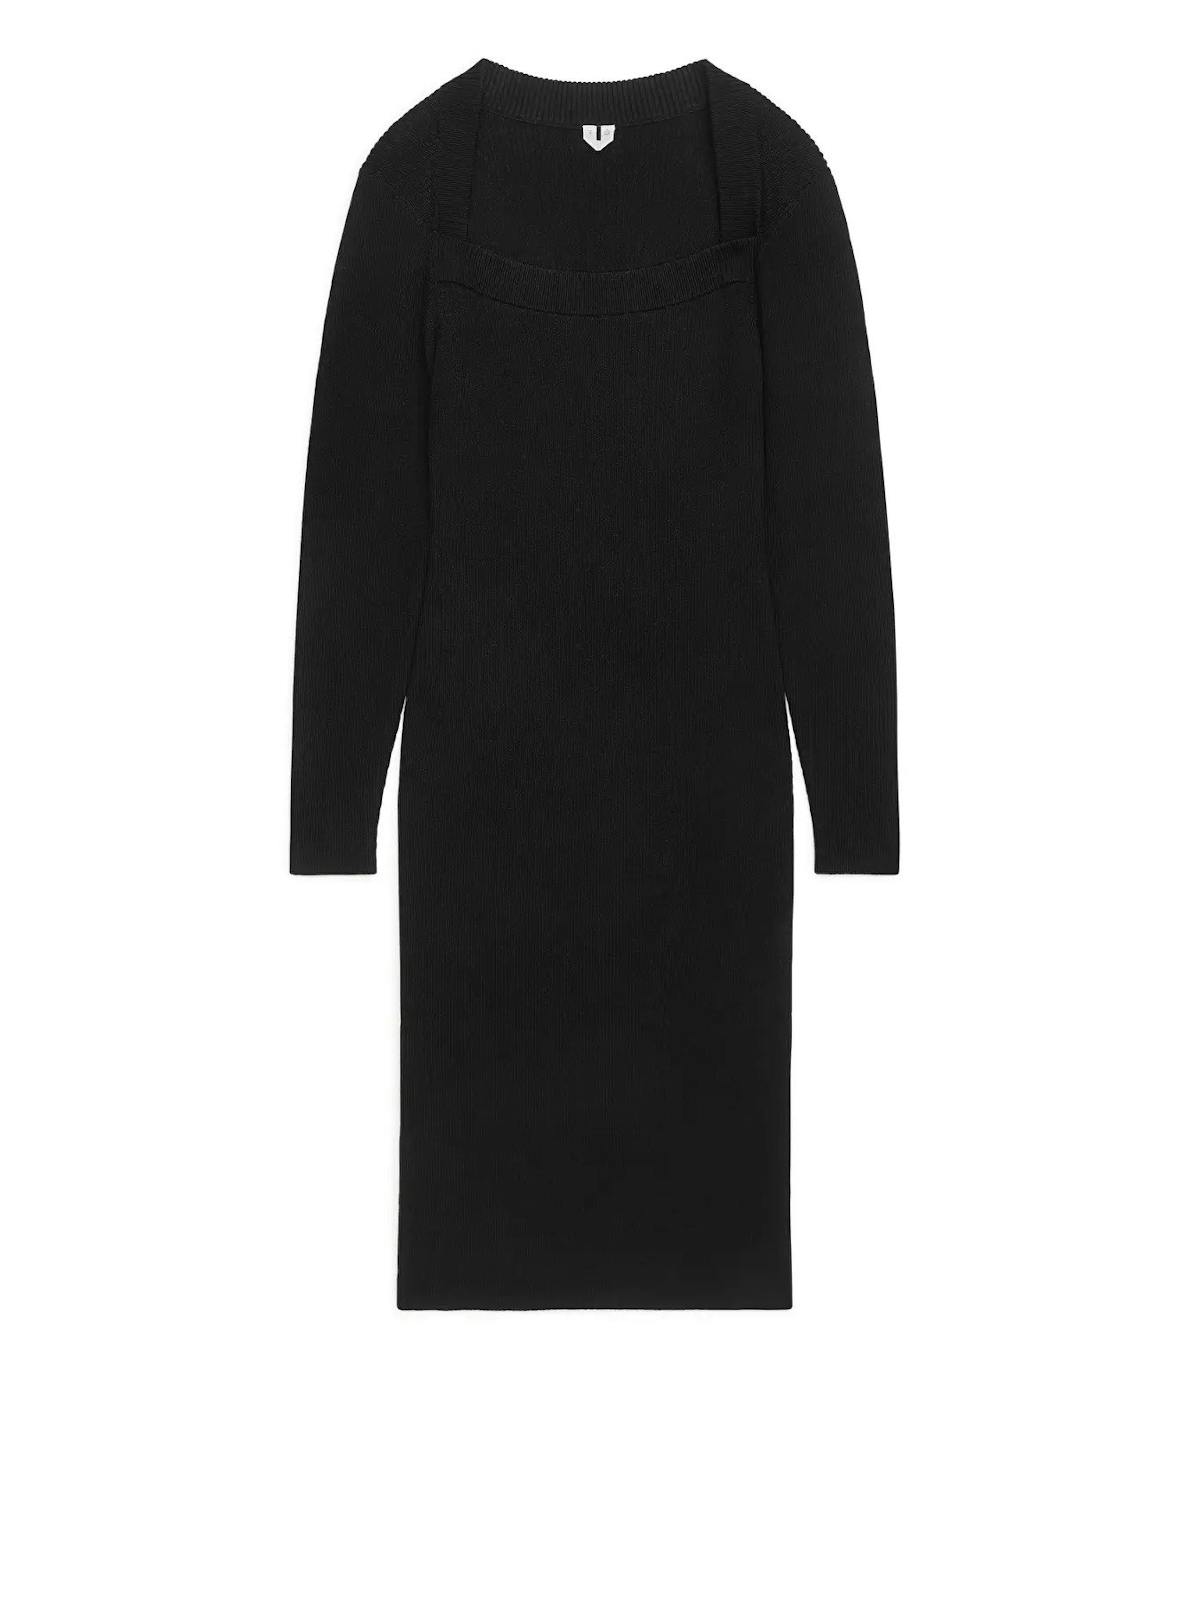 Best dresses for Christmas day: Arket black knitted dress